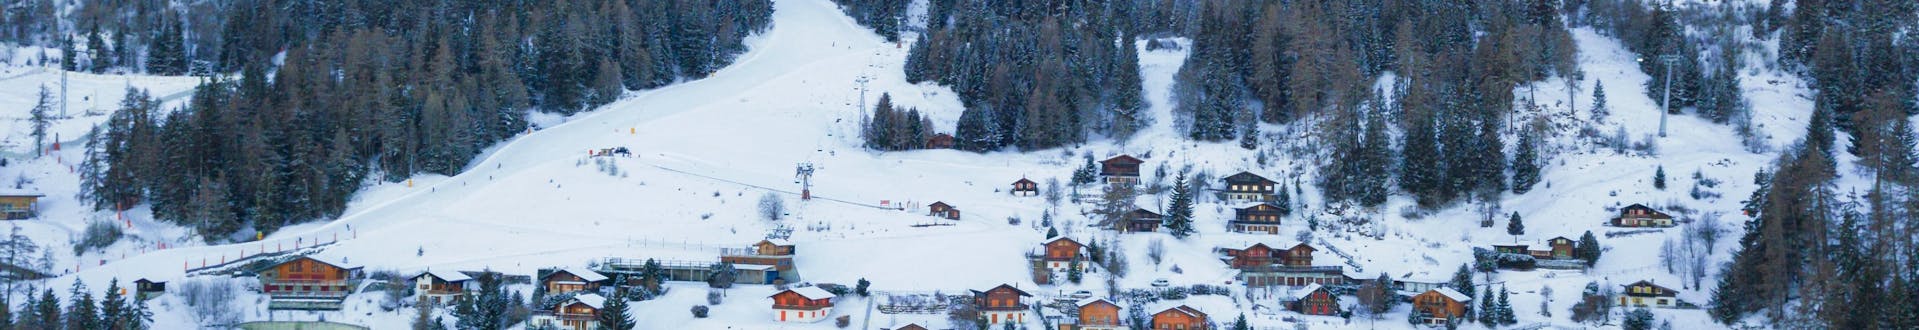 Vue aérienne du petit village de La Tzoumaz, une station de ski suisse populaire dans laquelle les visiteurs peuvent réserver des cours de ski avec les écoles de ski locales.